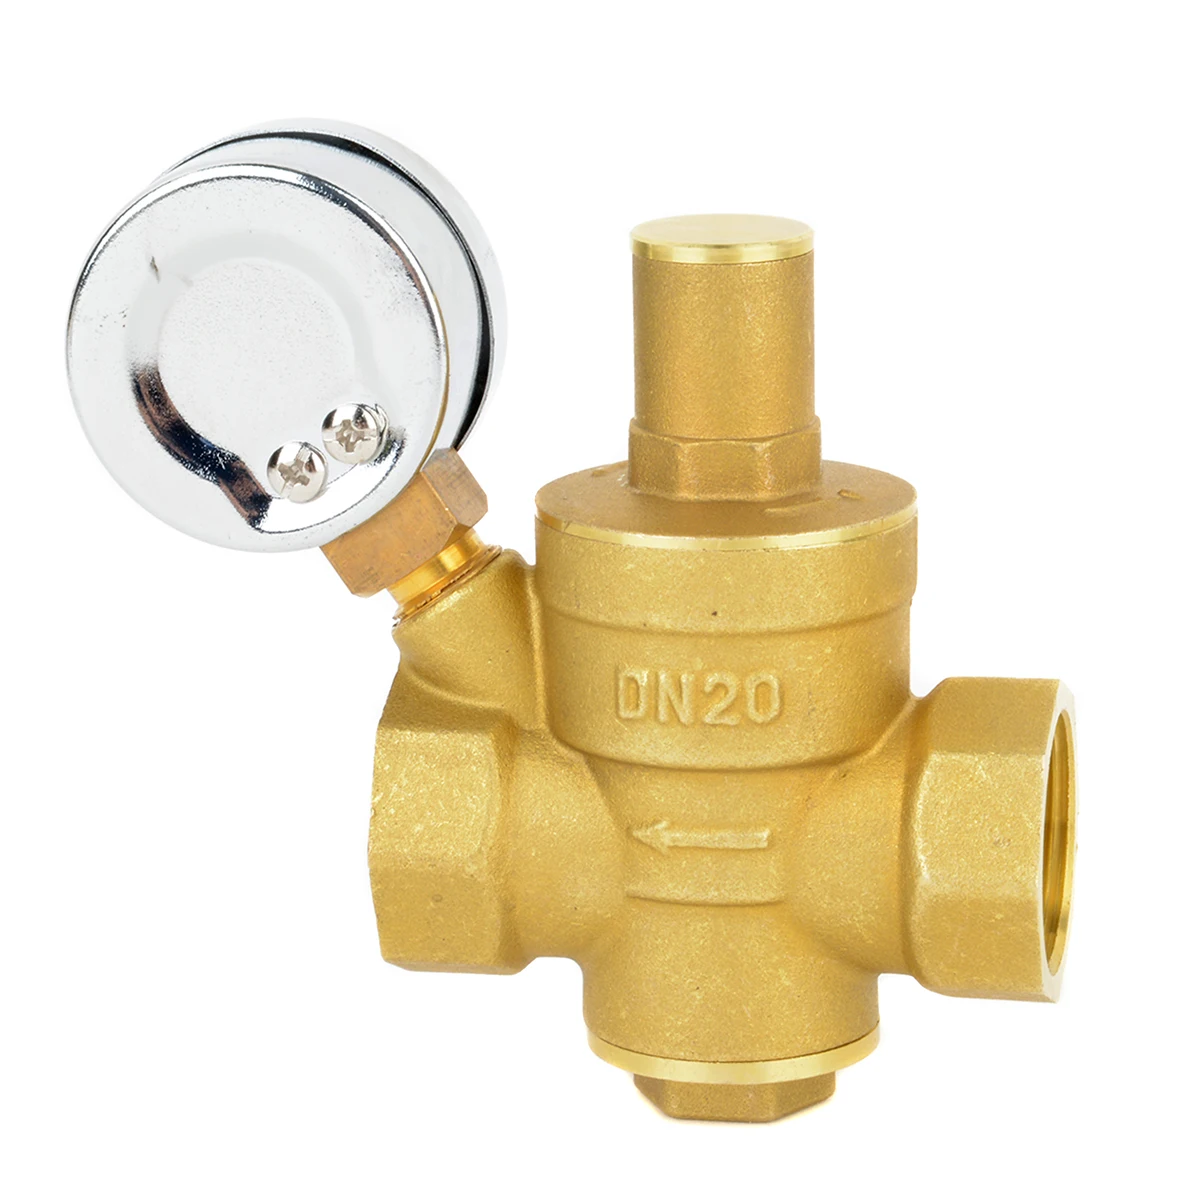 Mayitr прочный DN20 3/" Регулируемый латунный водопроводный клапан для снижения давления воды регулятор давления с манометром